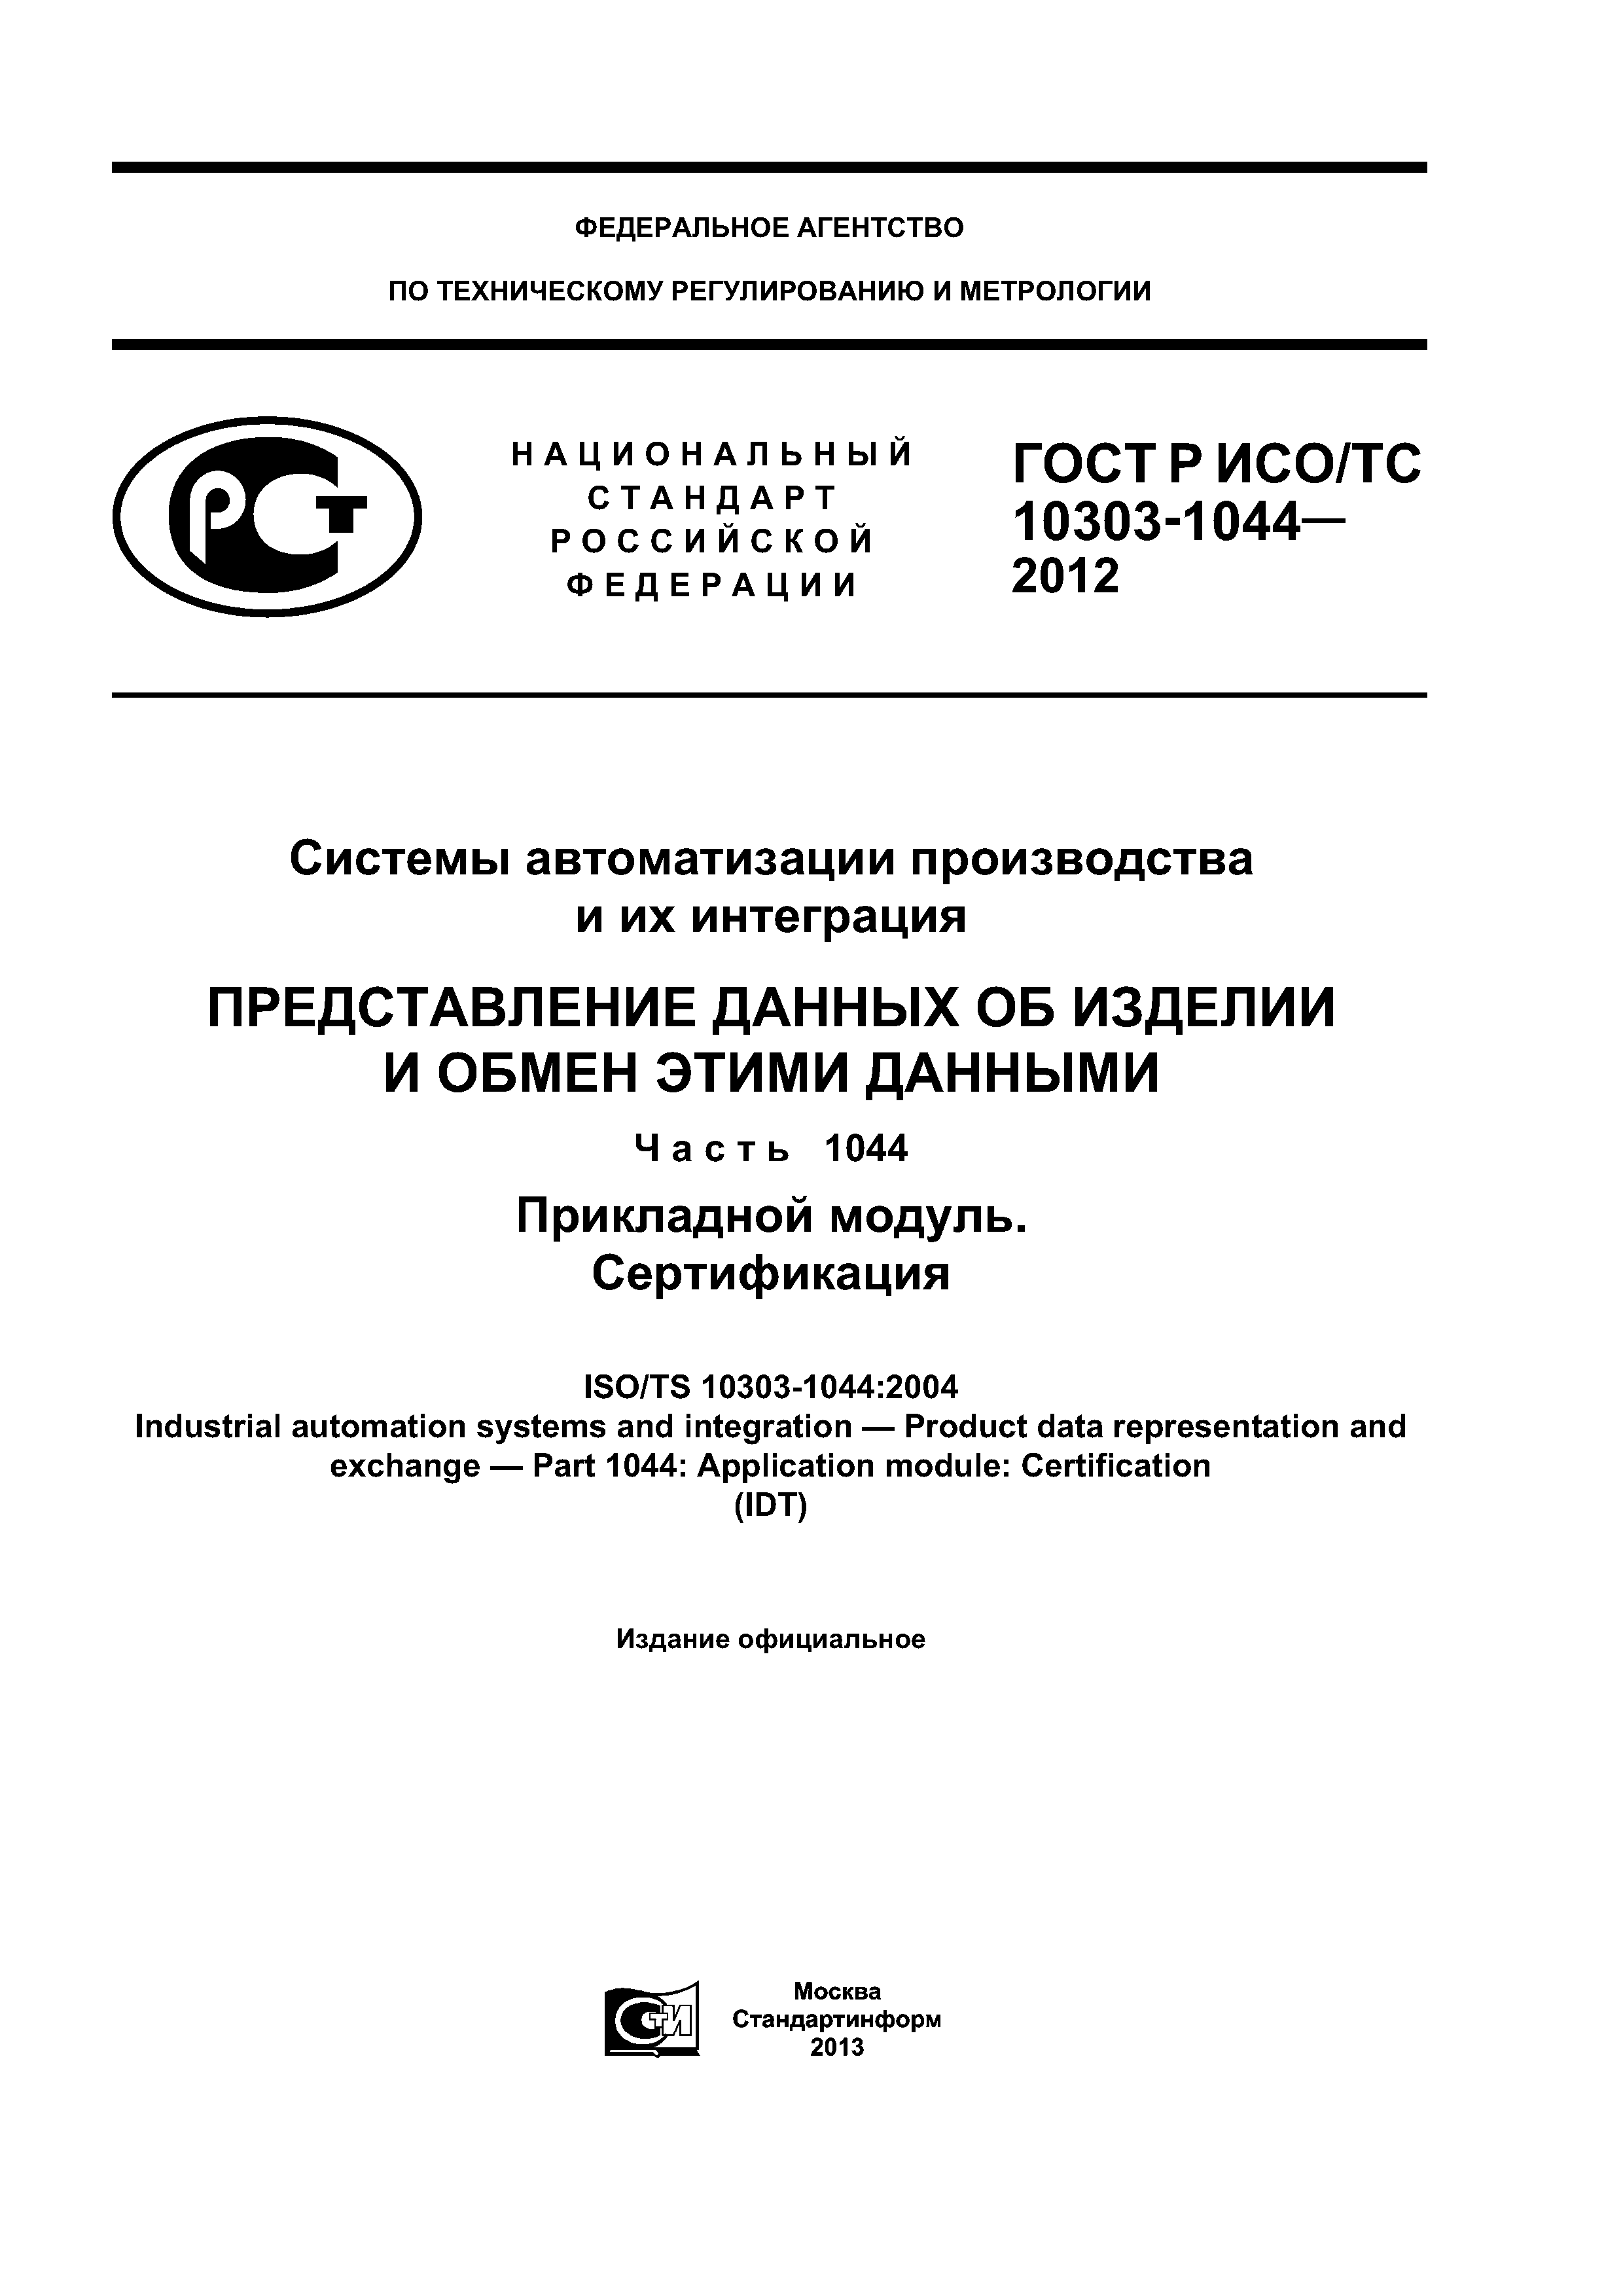 ГОСТ Р ИСО/ТС 10303-1044-2012